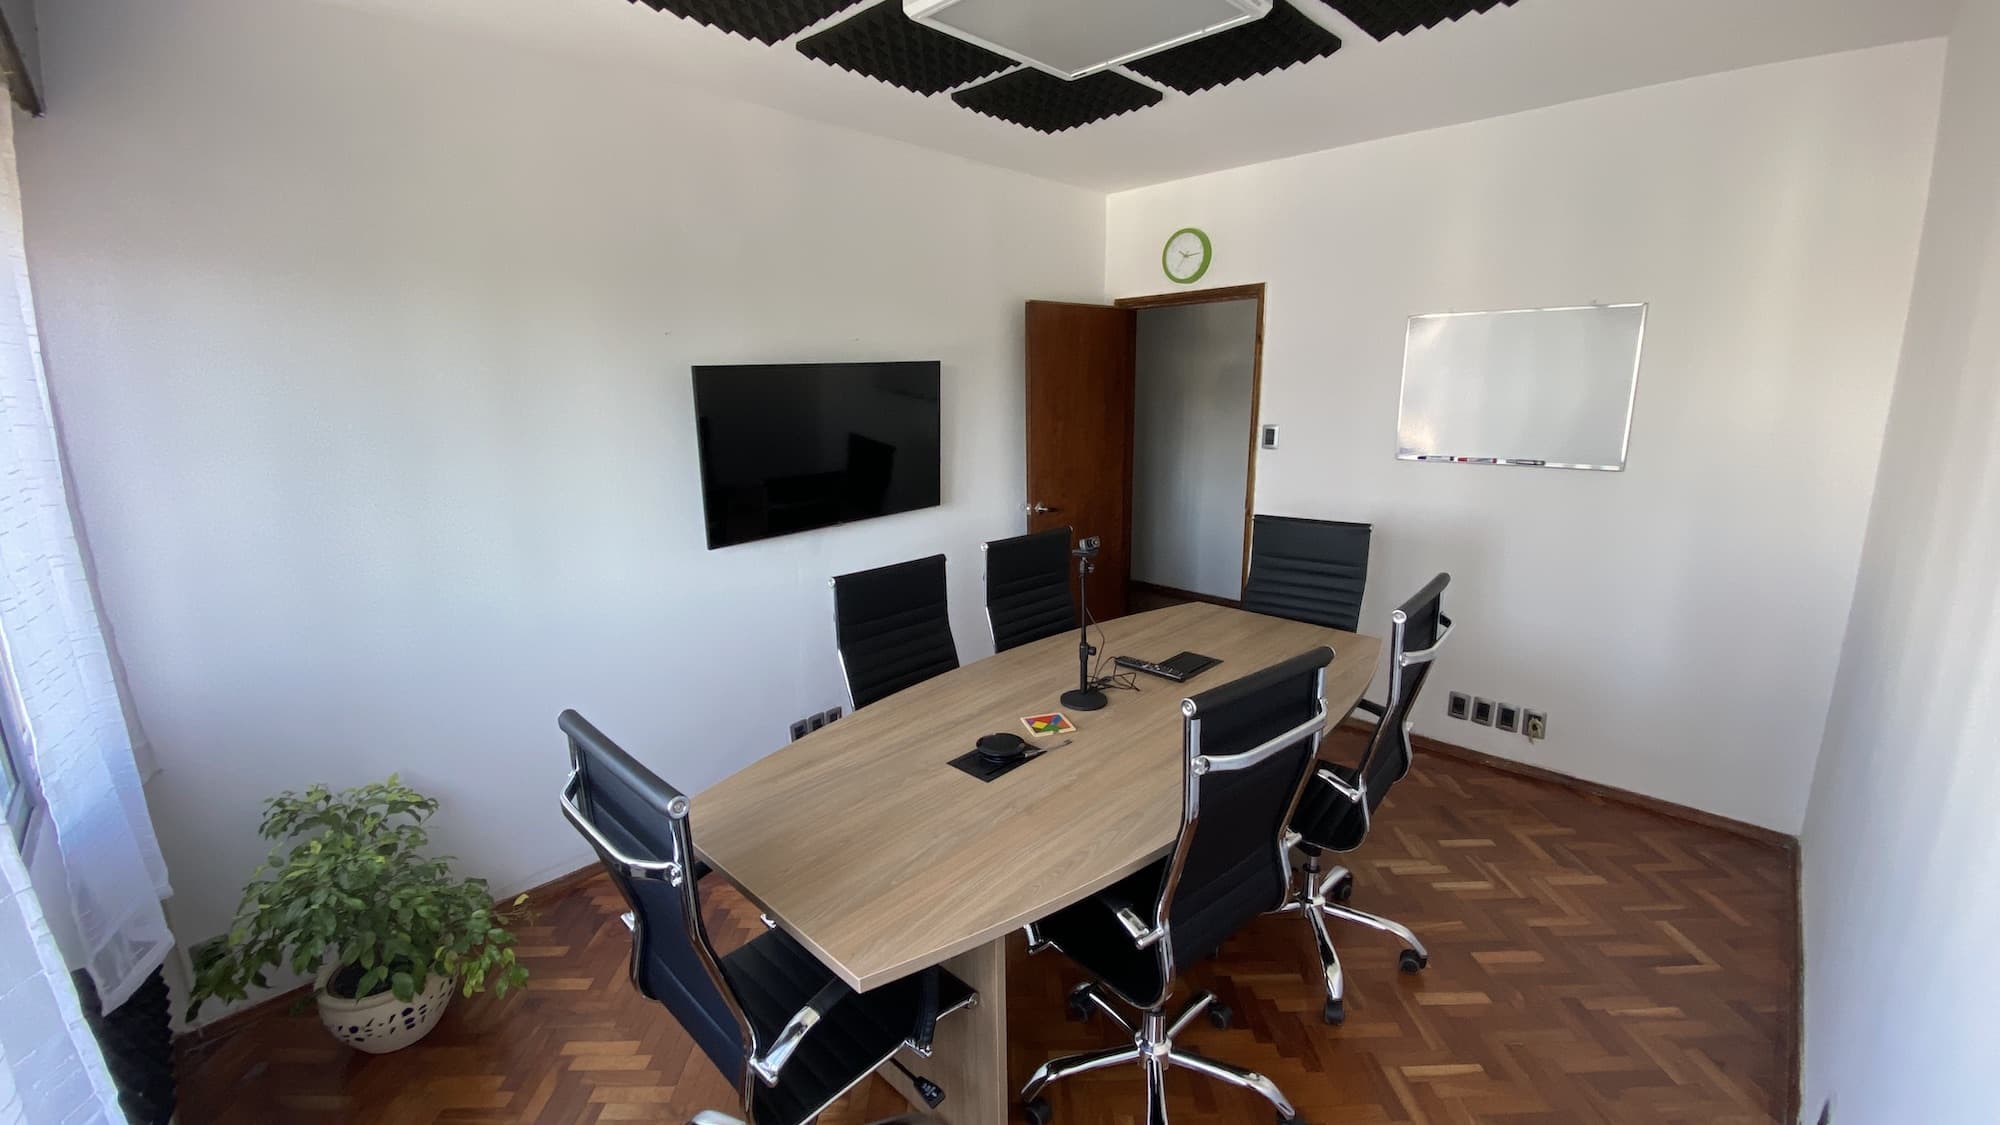 Streaver's meeting room in 2019